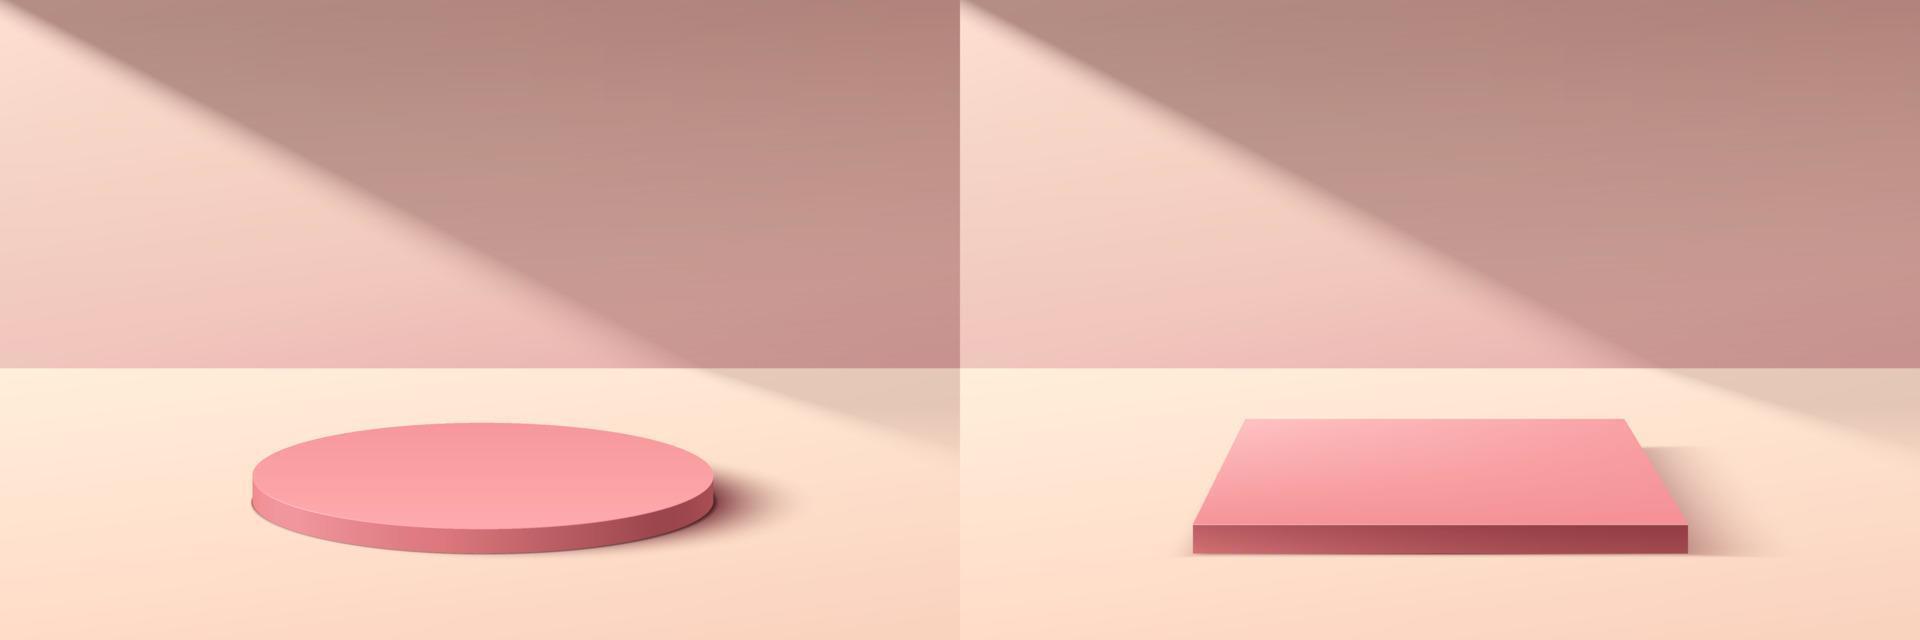 uppsättning av abstrakt 3d rosa cylinder och kub piedestal podium med pastellrosa minimal vägg scen i skugga. samling av vektor rendering geometrisk plattform för kosmetisk produkt display presentation.